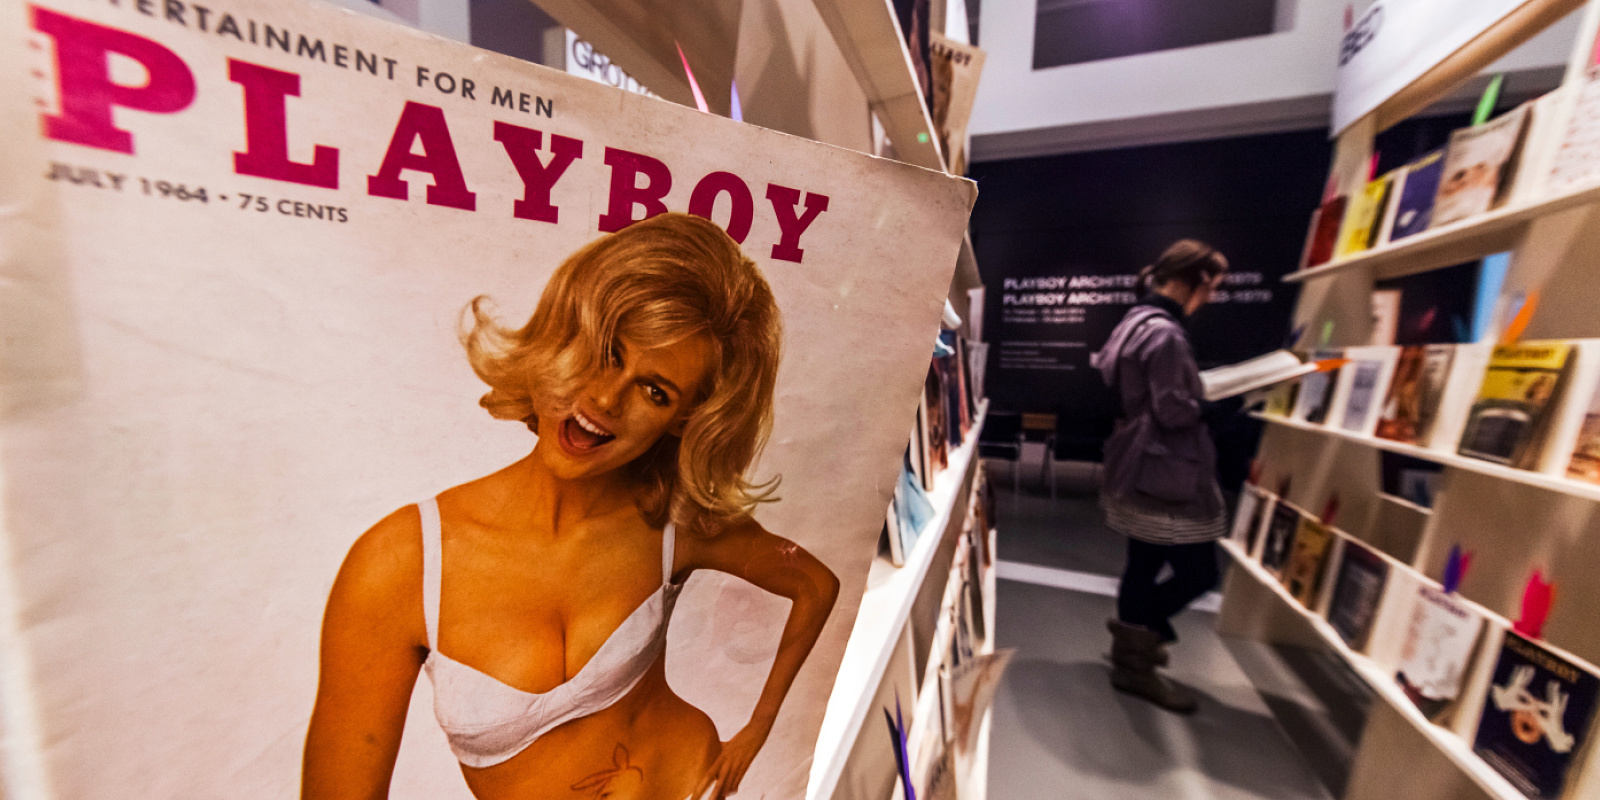 Ausstellung Playboy Architektur, Deutsches Architekturmuseum Frankfurt